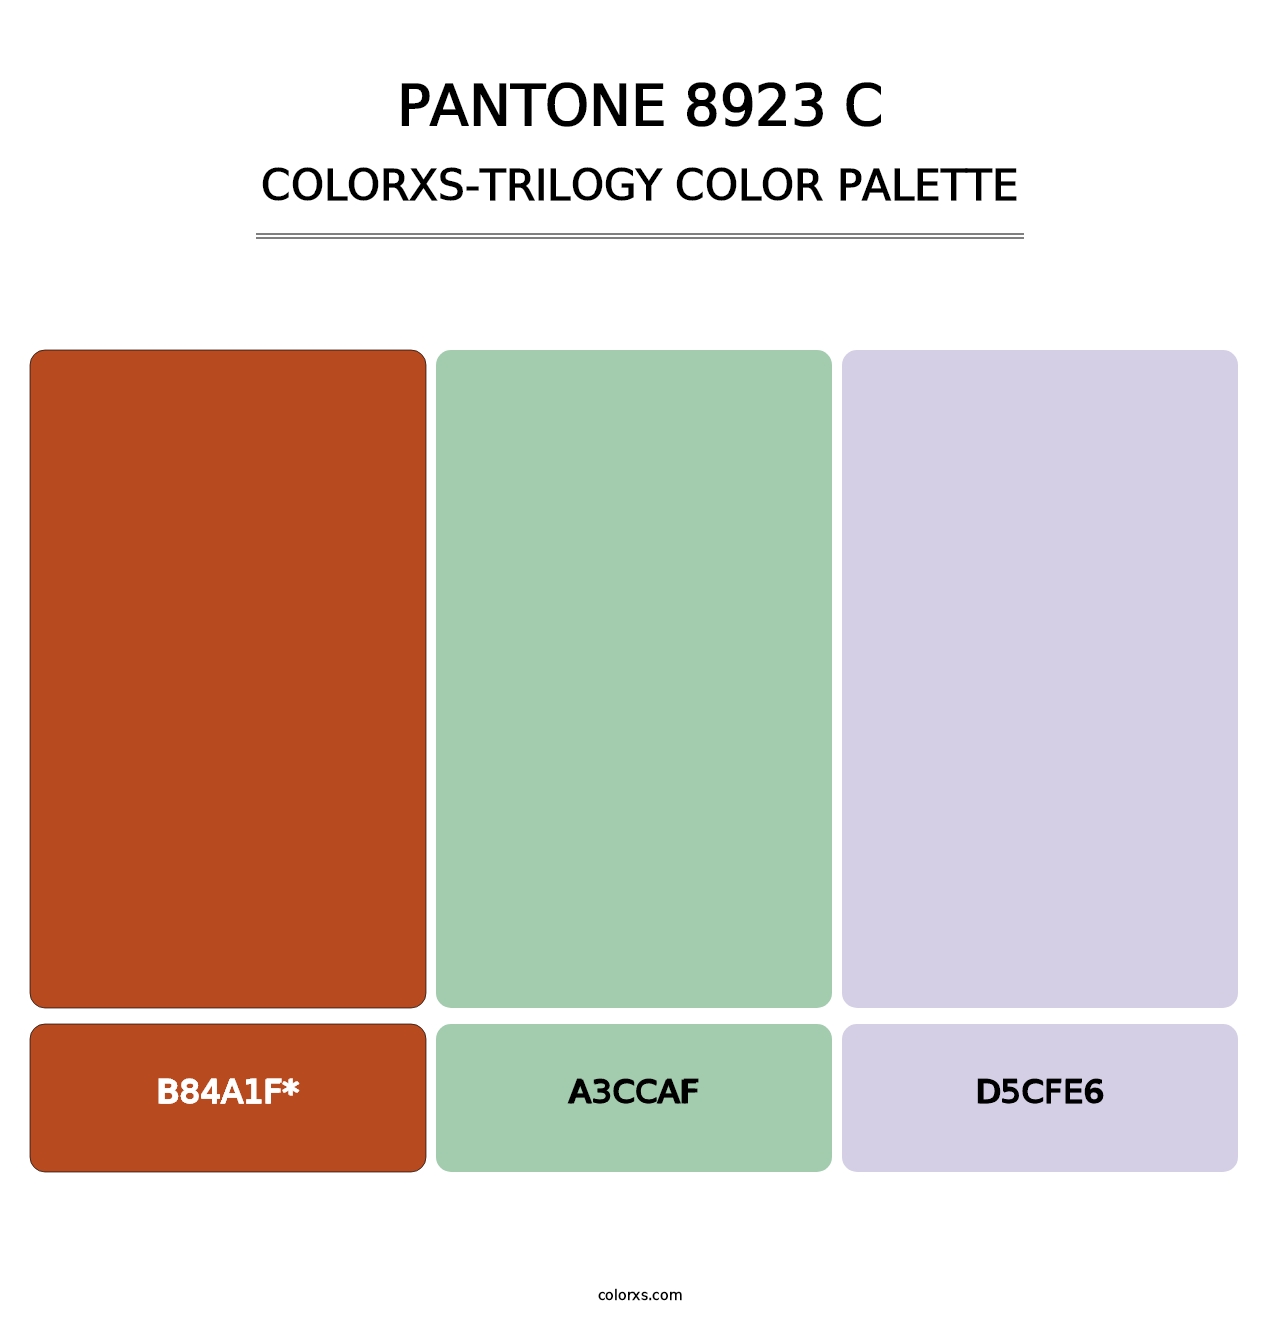 PANTONE 8923 C - Colorxs Trilogy Palette